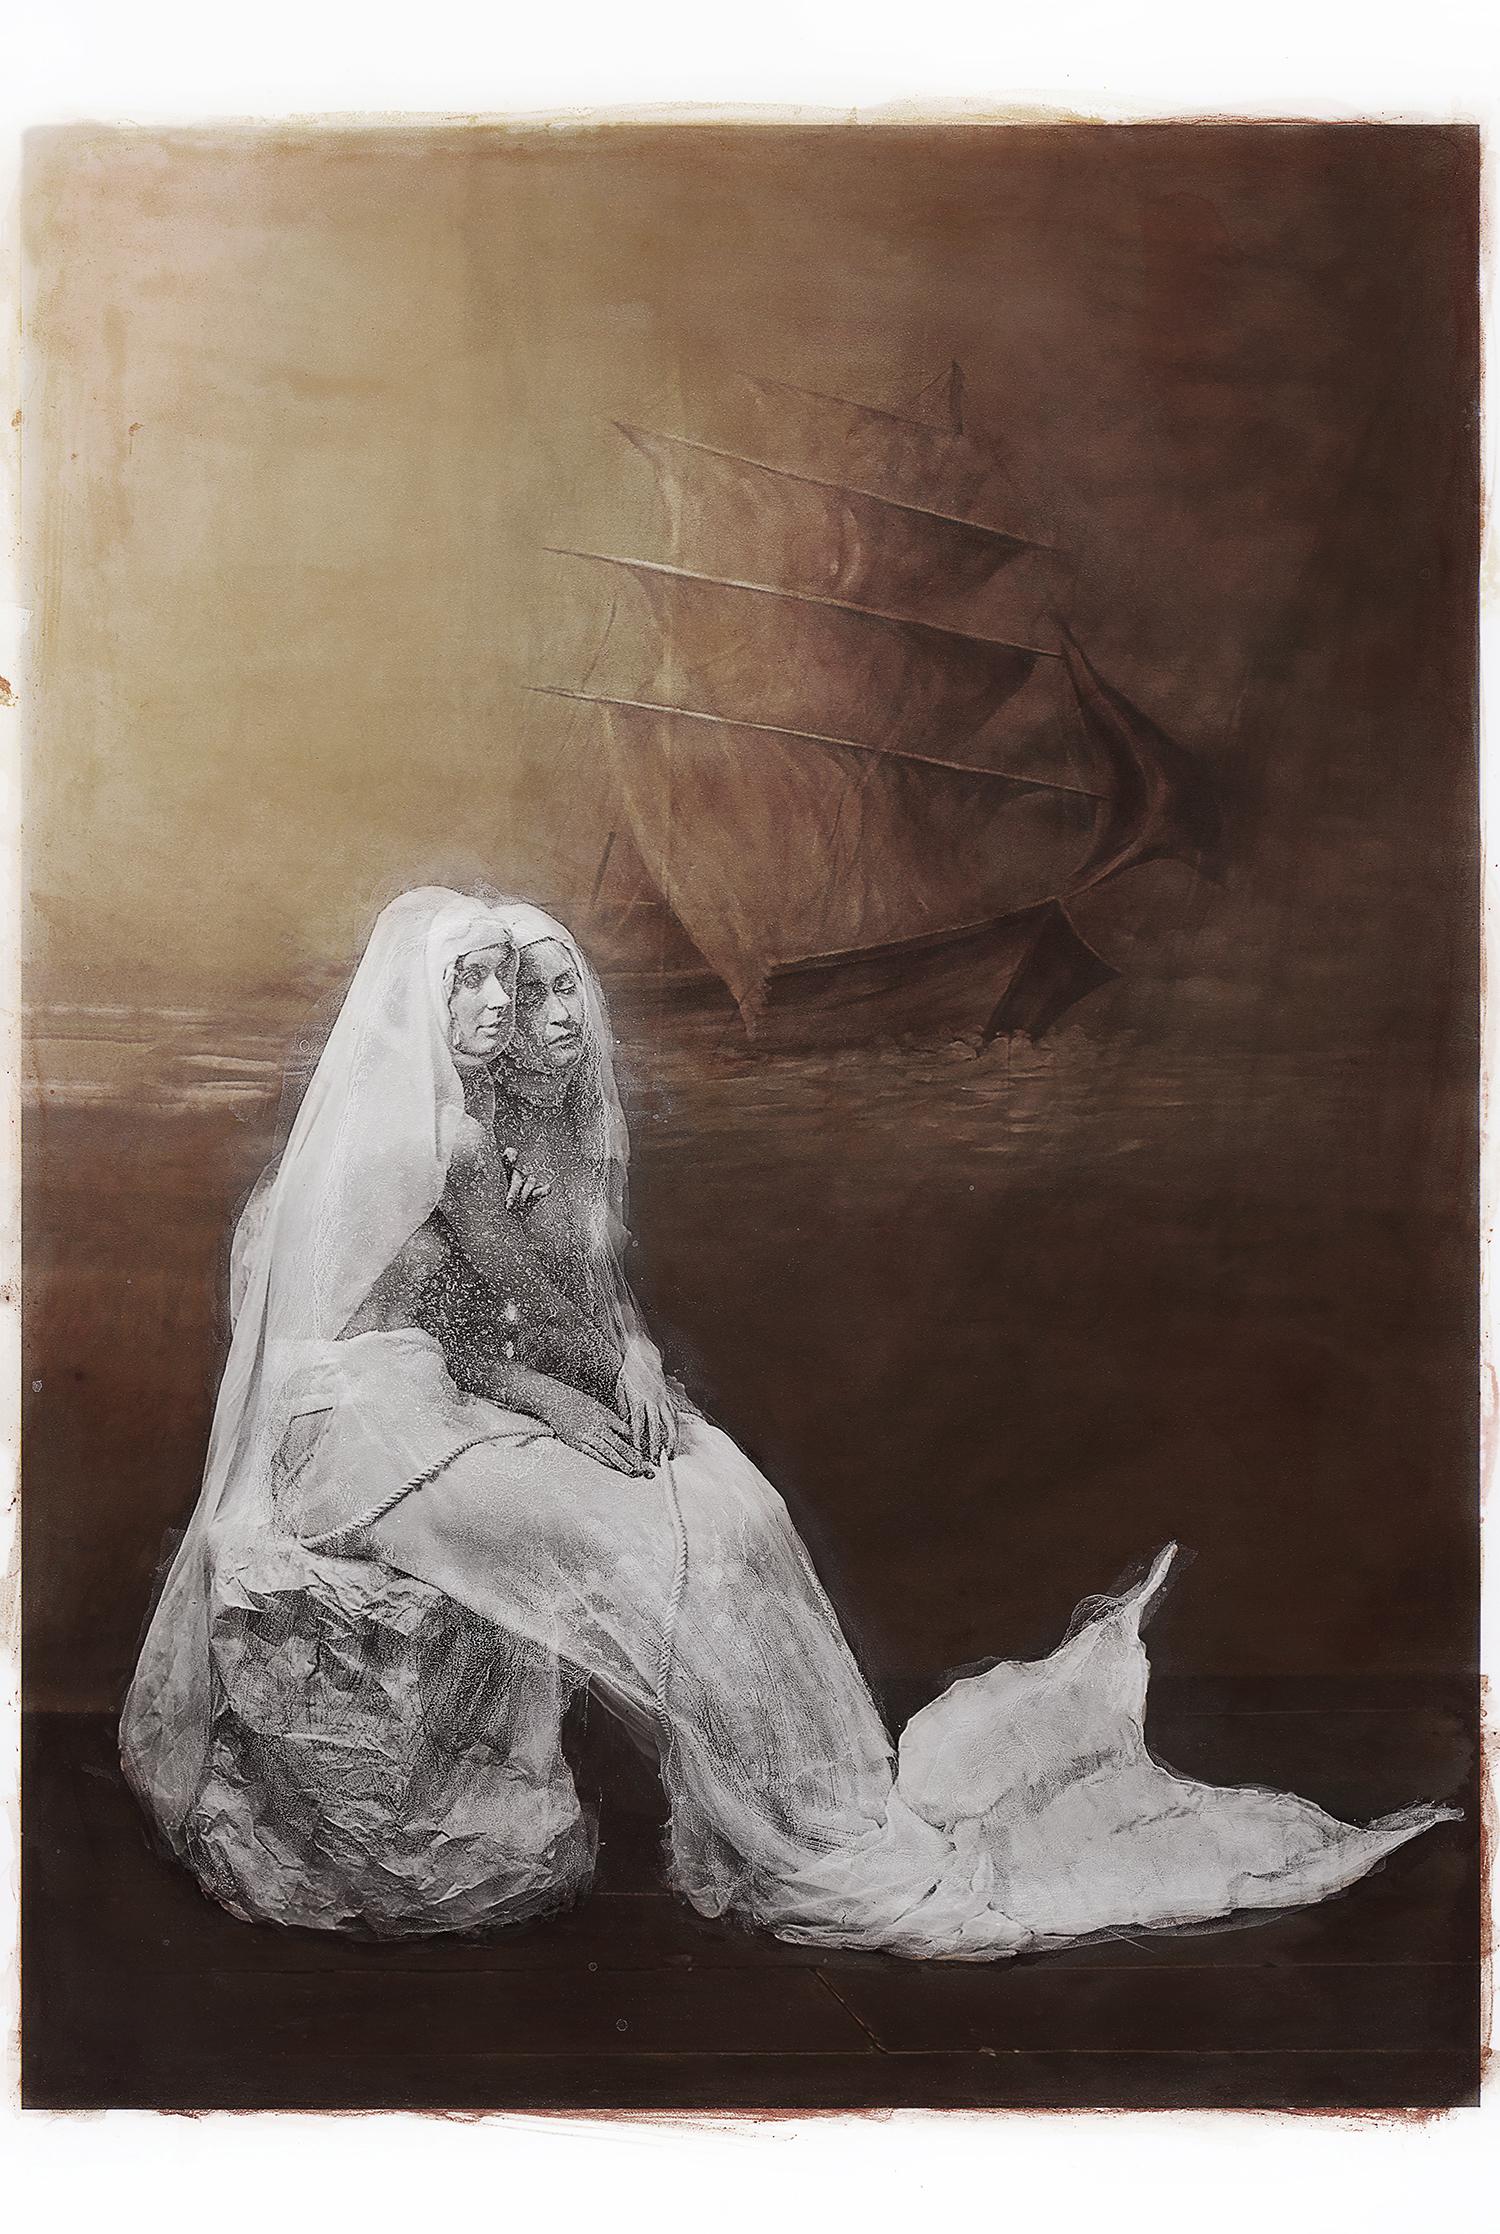 Color Photograph Katie Eleanor - Siren immobilisé dans du marbre, entouré d'une étreinte et d'un navire à canon en arrière-plan